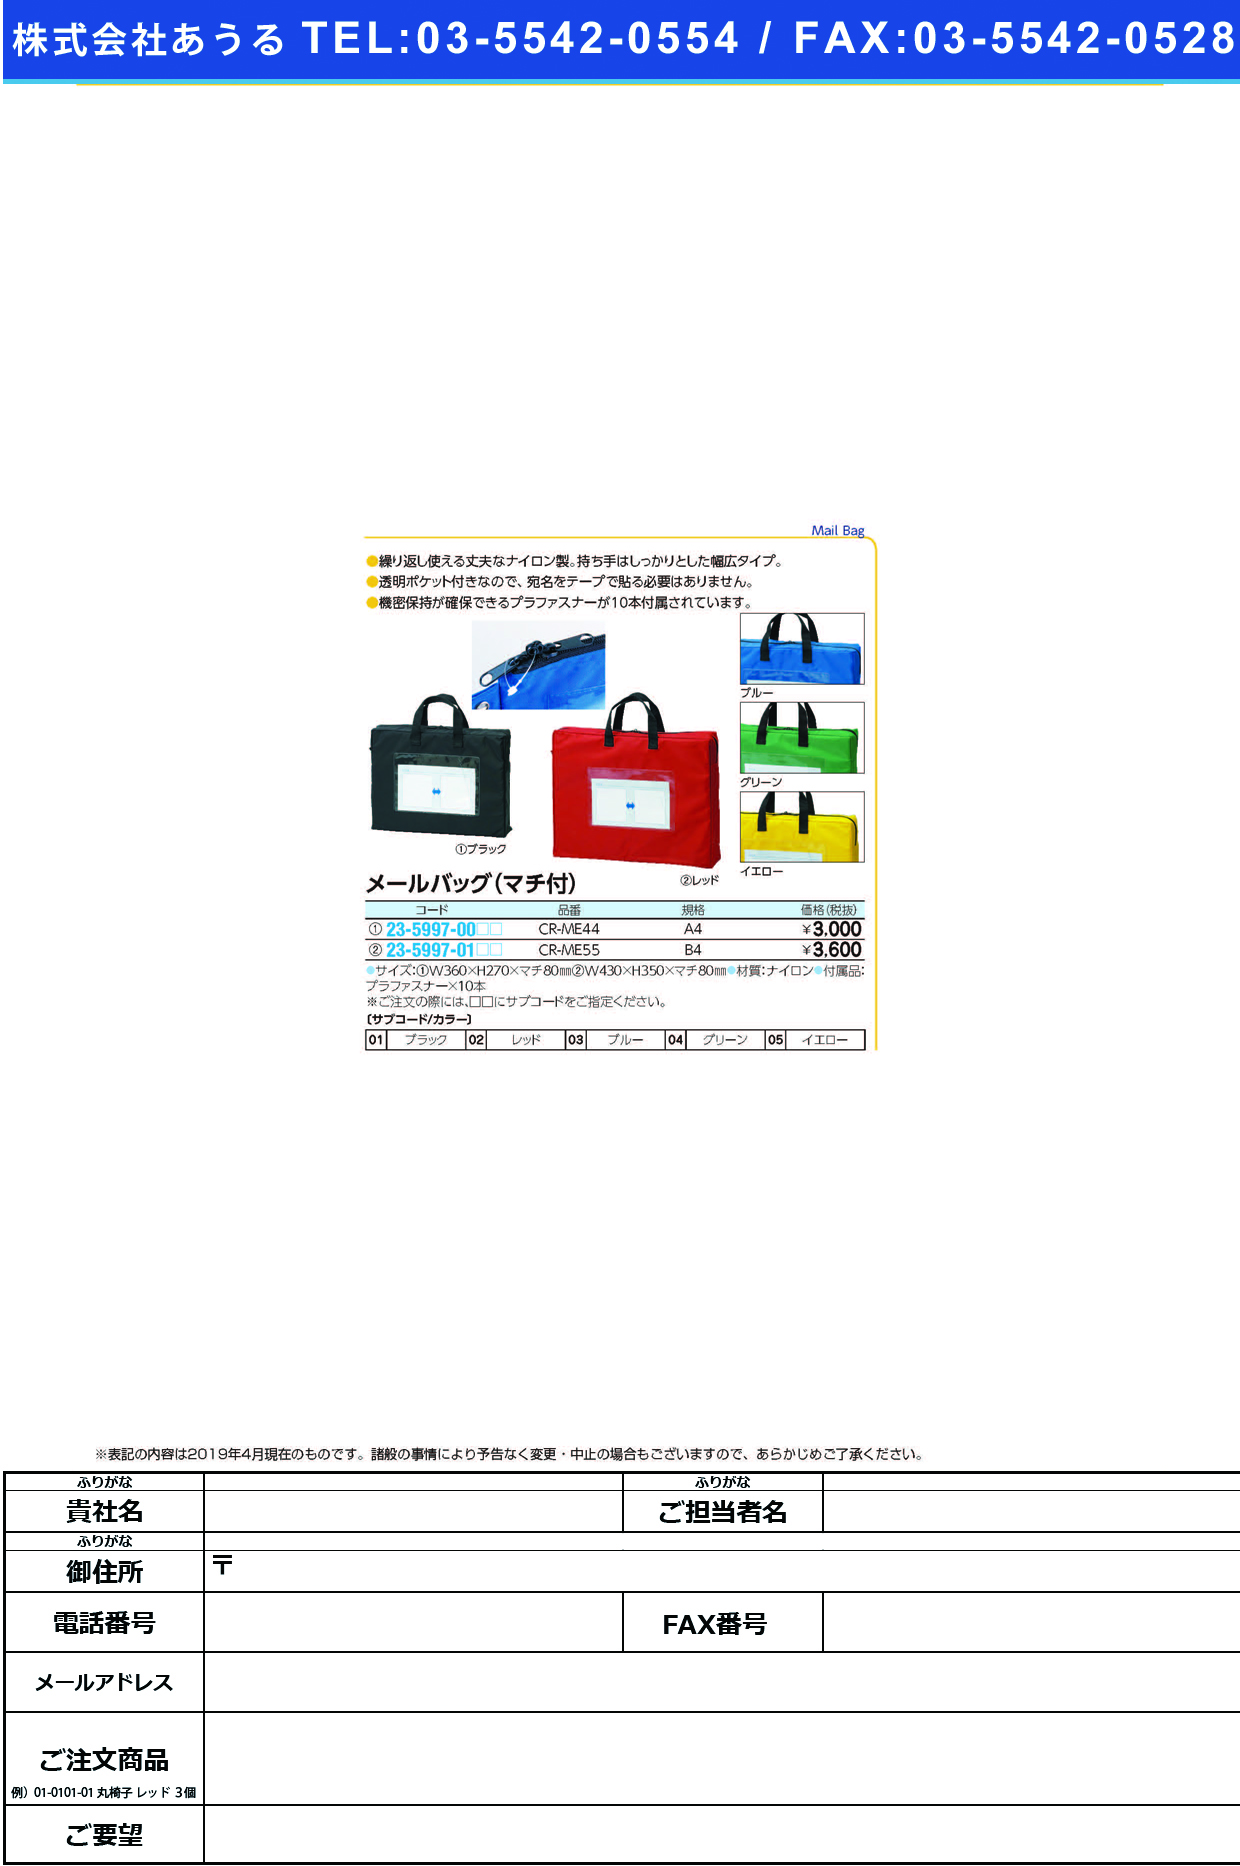 (23-5997-01)メールバッグ（マチ付） CR-ME55(B4) ﾒｰﾙﾊﾞｯｸﾞ(ﾏﾁﾂｷ) グリーン【1個単位】【2019年カタログ商品】